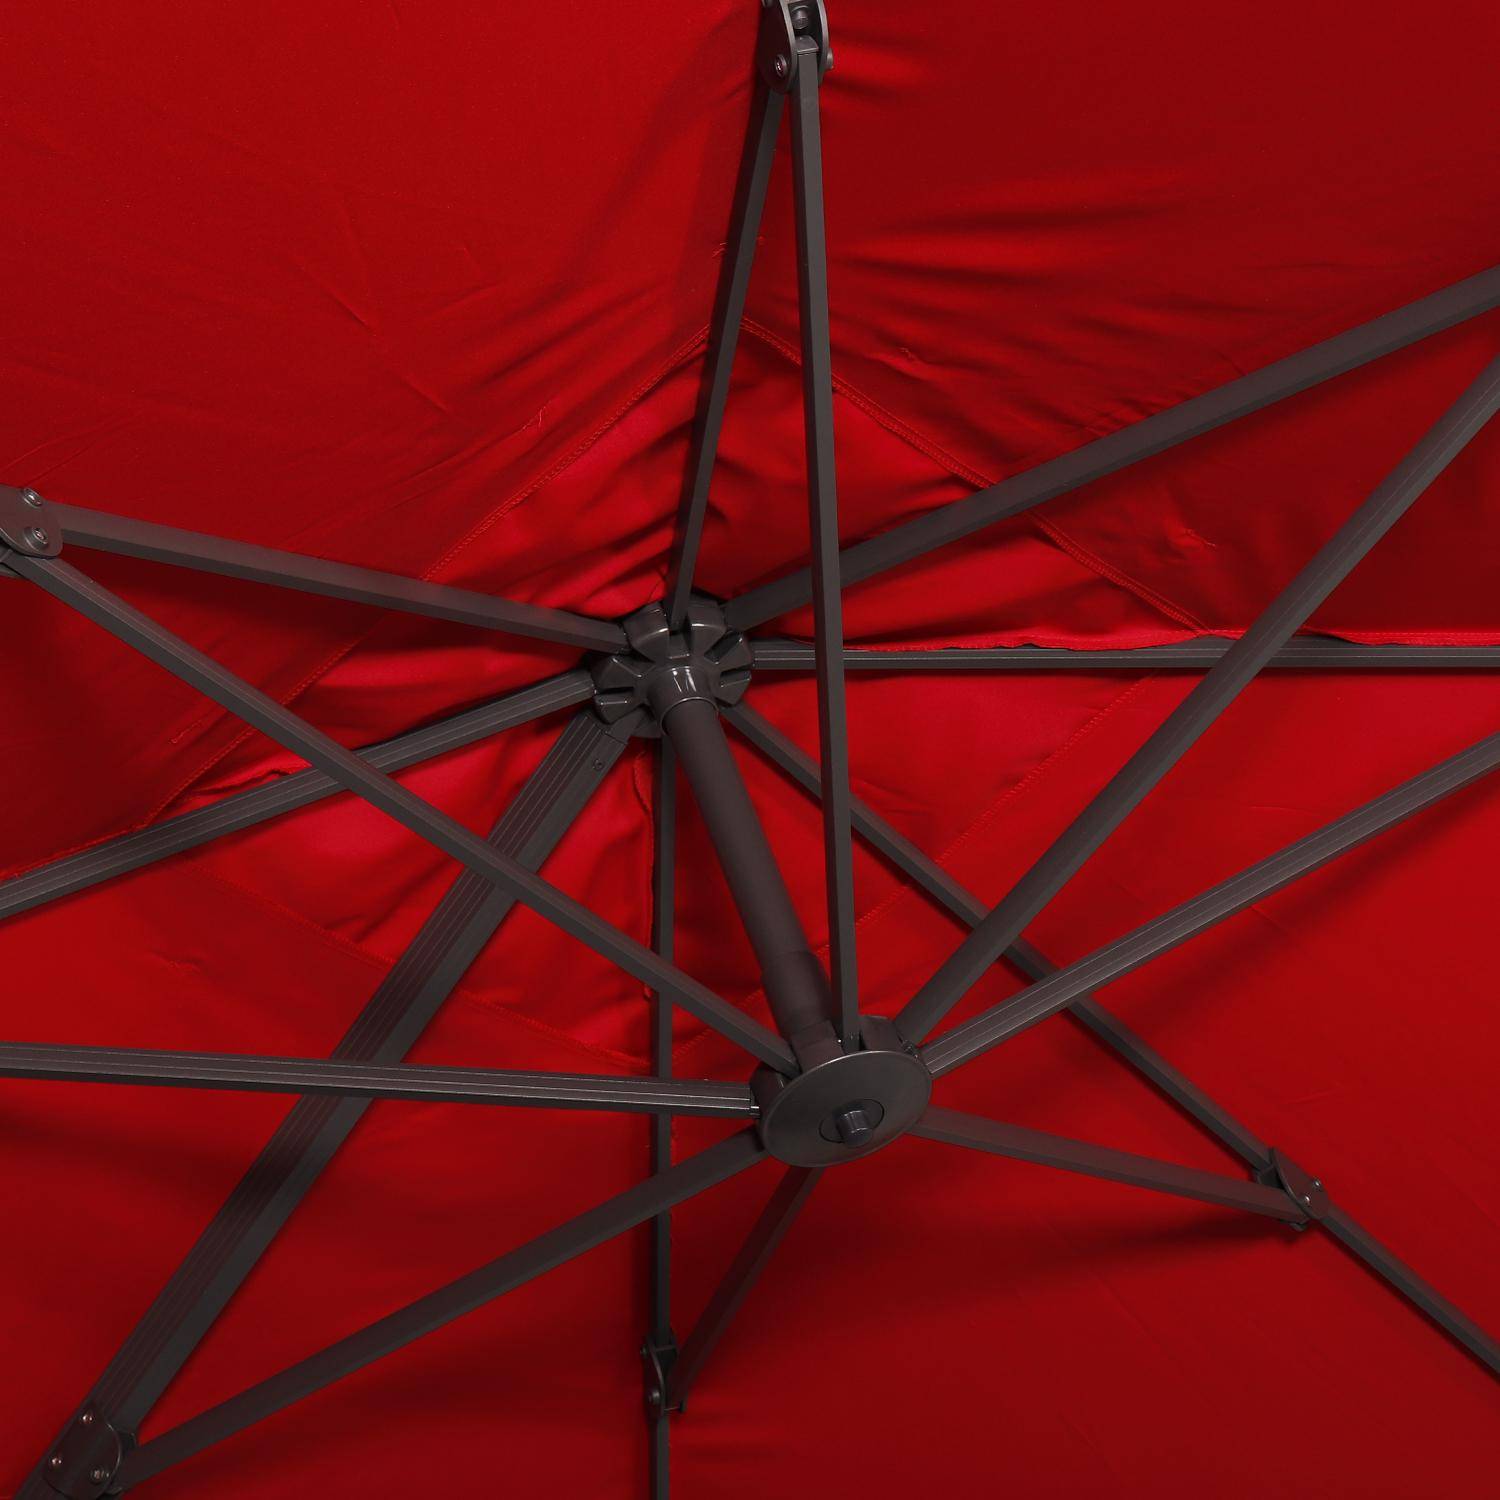 Sombrilla cuadrada desplazable 3 x 3 m - Falgos - rojo - Sombrilla desplazable que se puede inclinar, plegar y girar 360°. Photo6